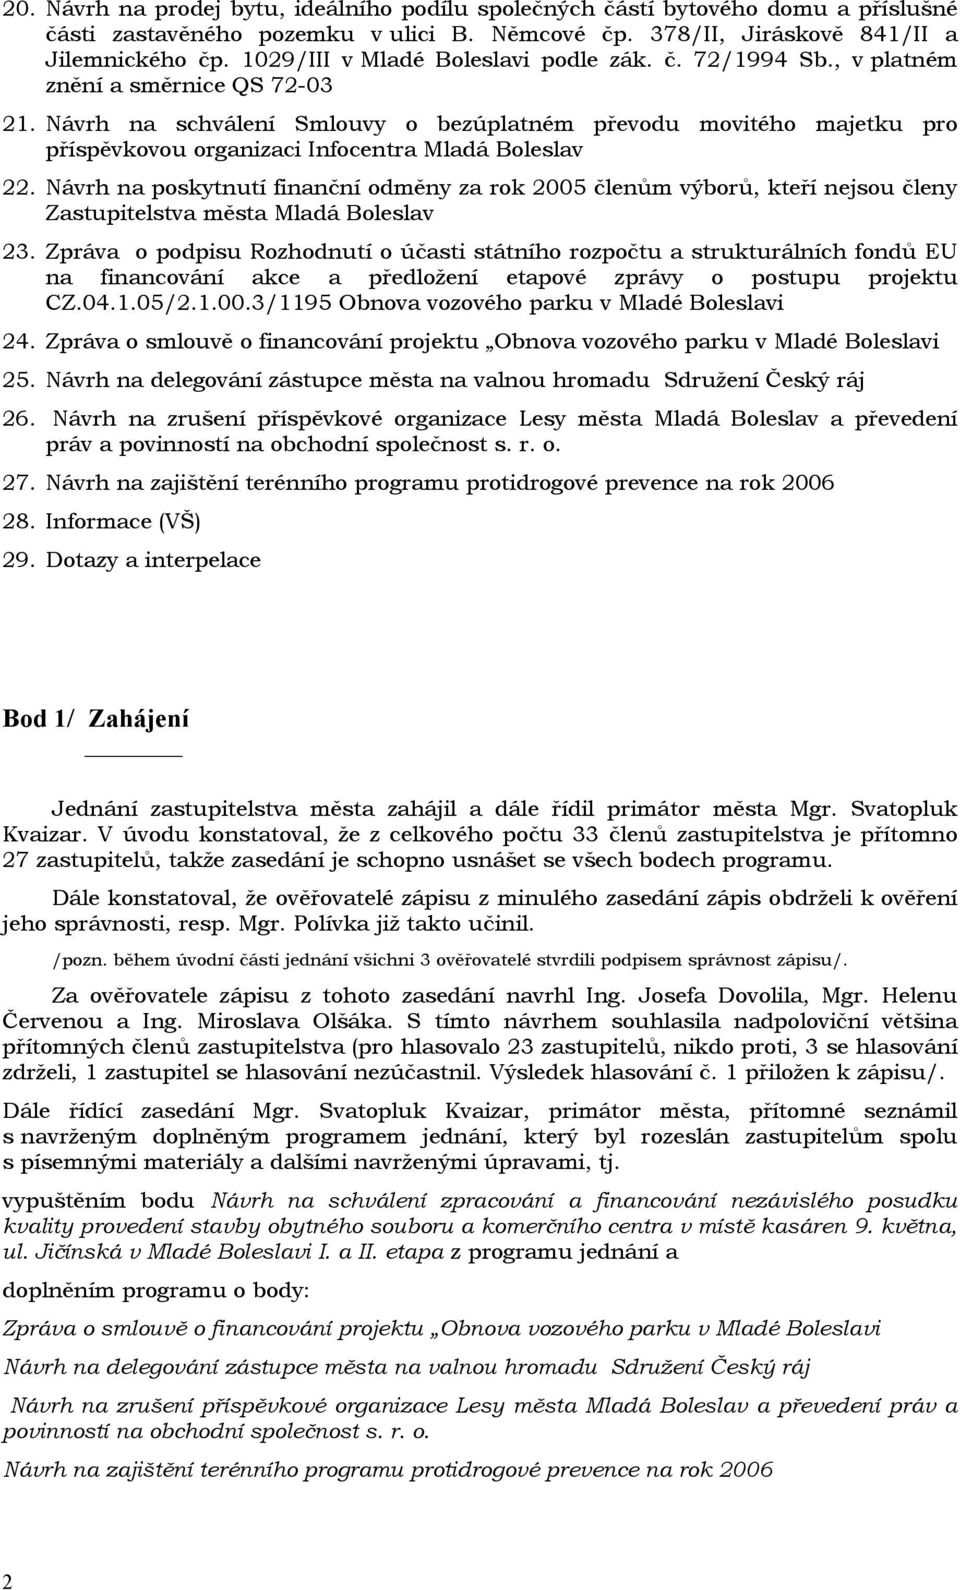 Návrh na schválení Smlouvy o bezúplatném převodu movitého majetku pro příspěvkovou organizaci Infocentra Mladá Boleslav 22.